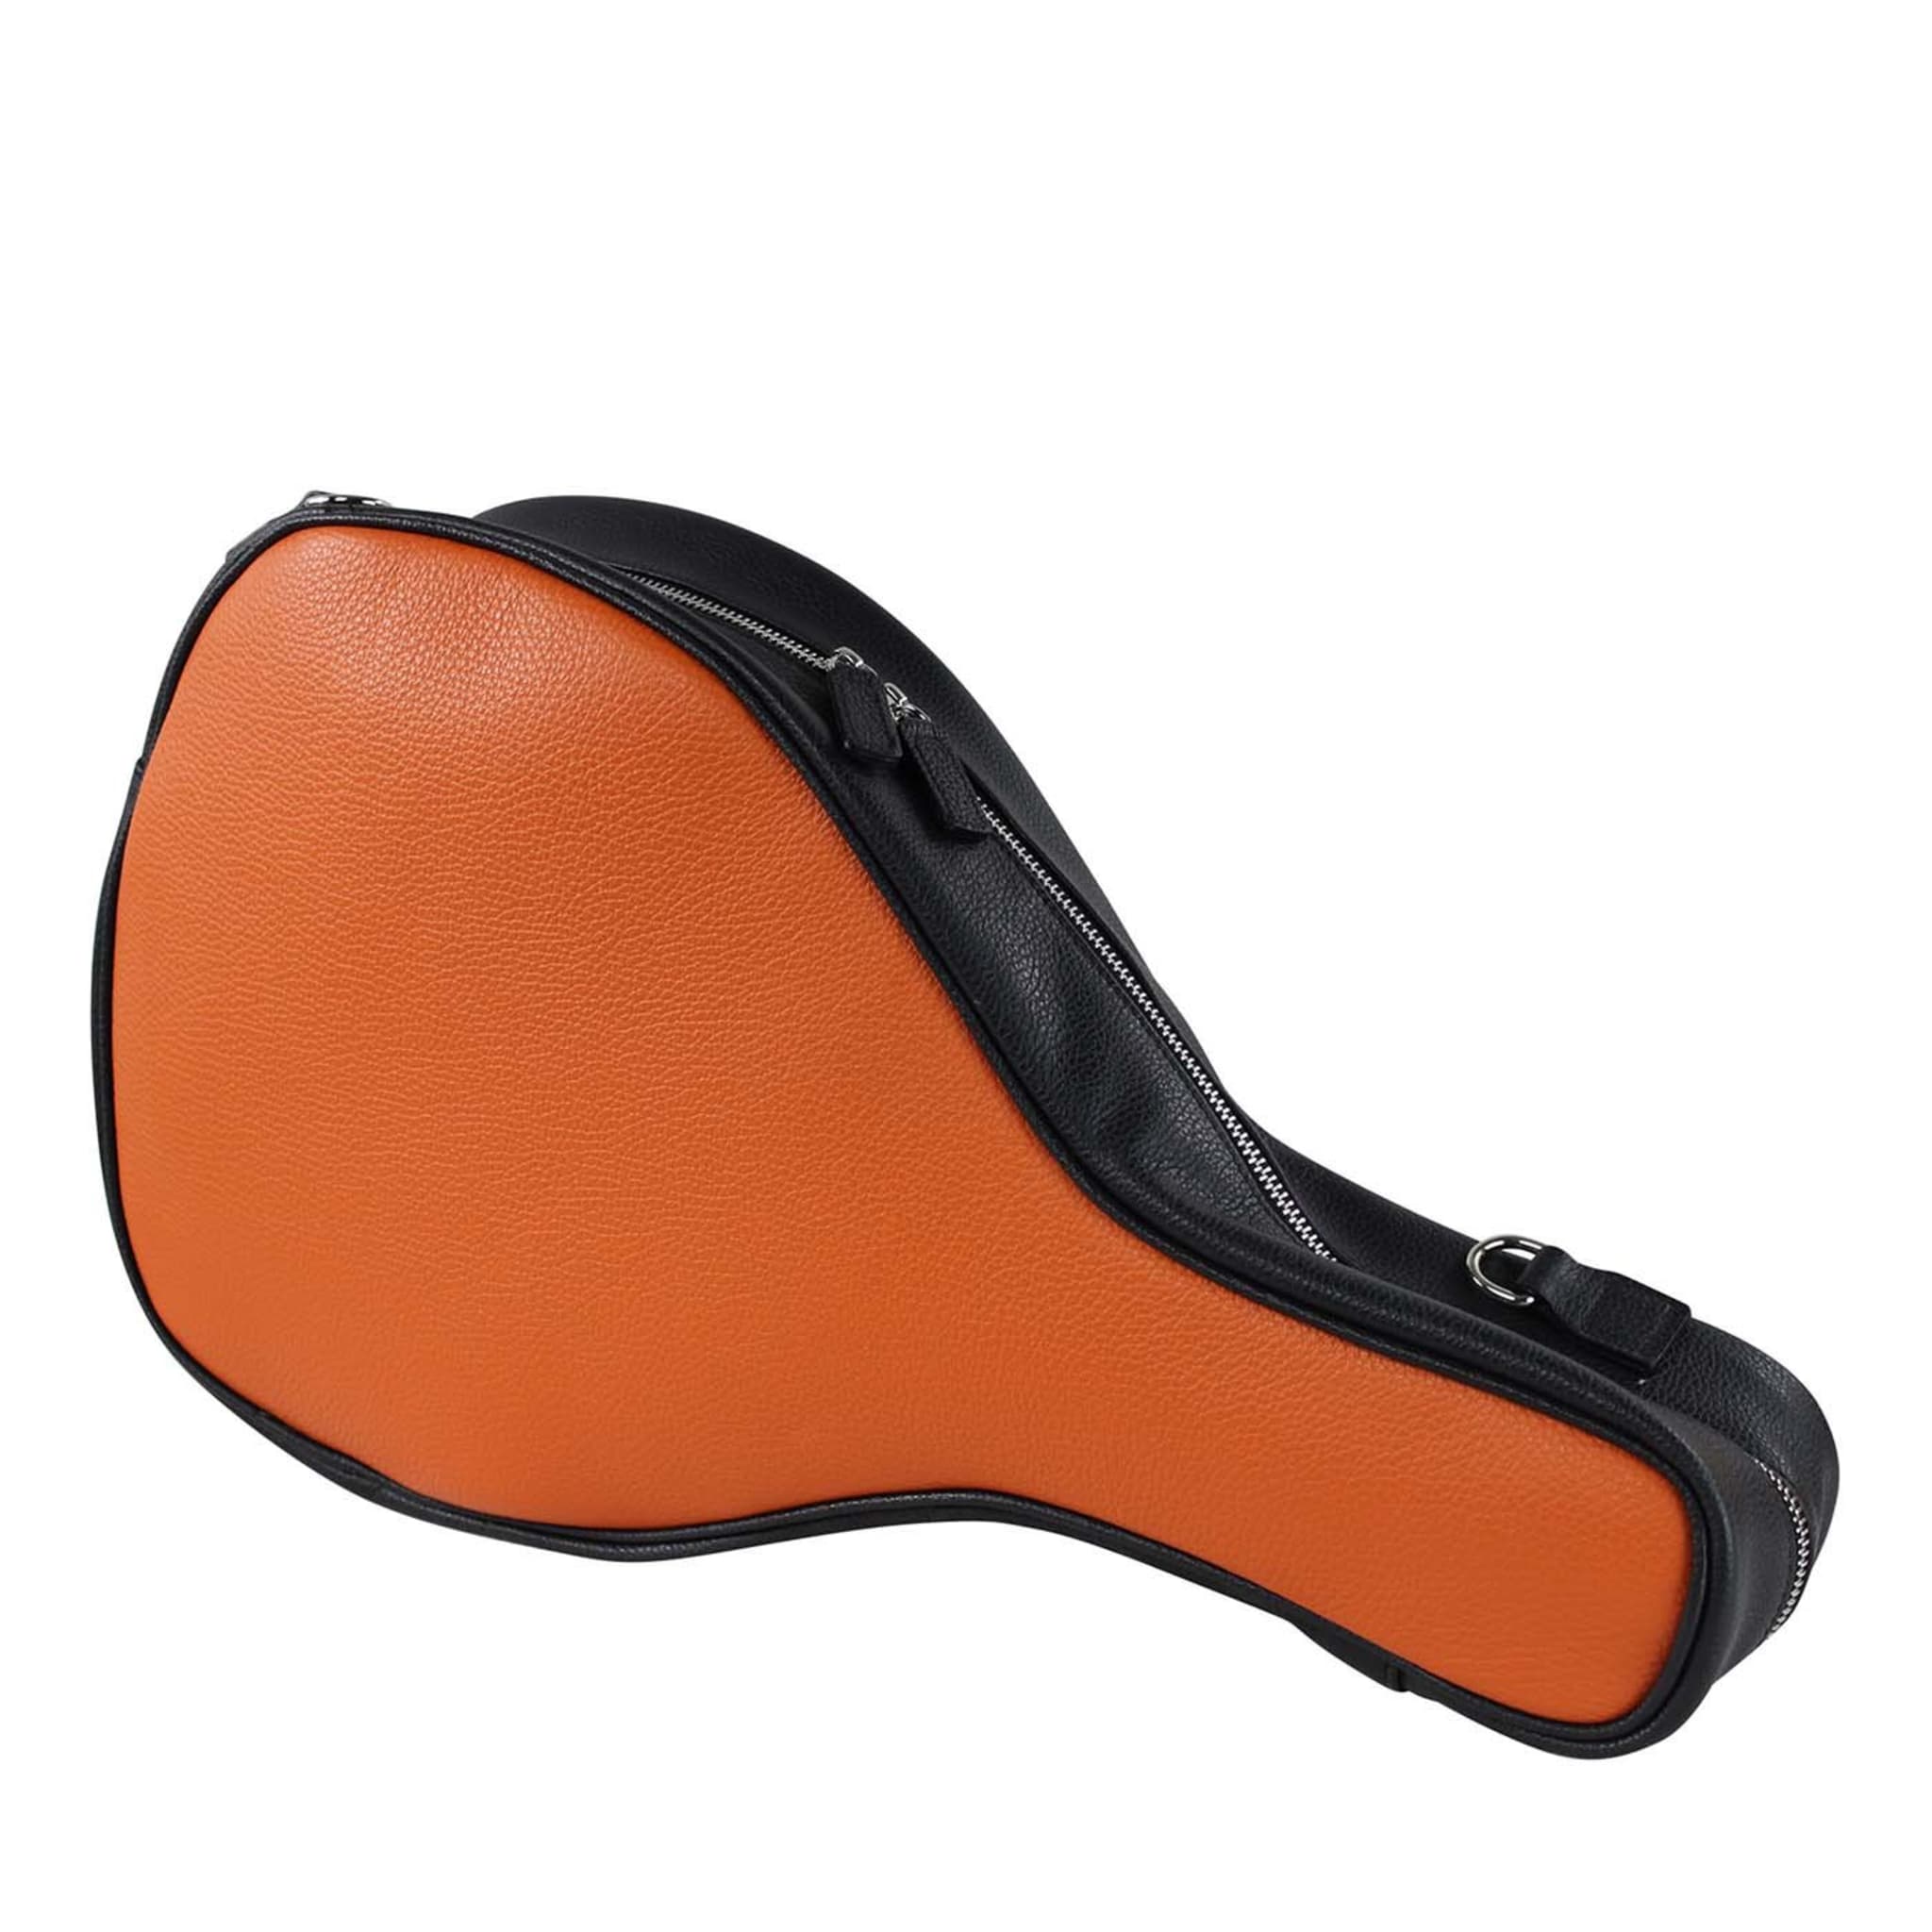 Orange and Black Paddle Bag - Main view